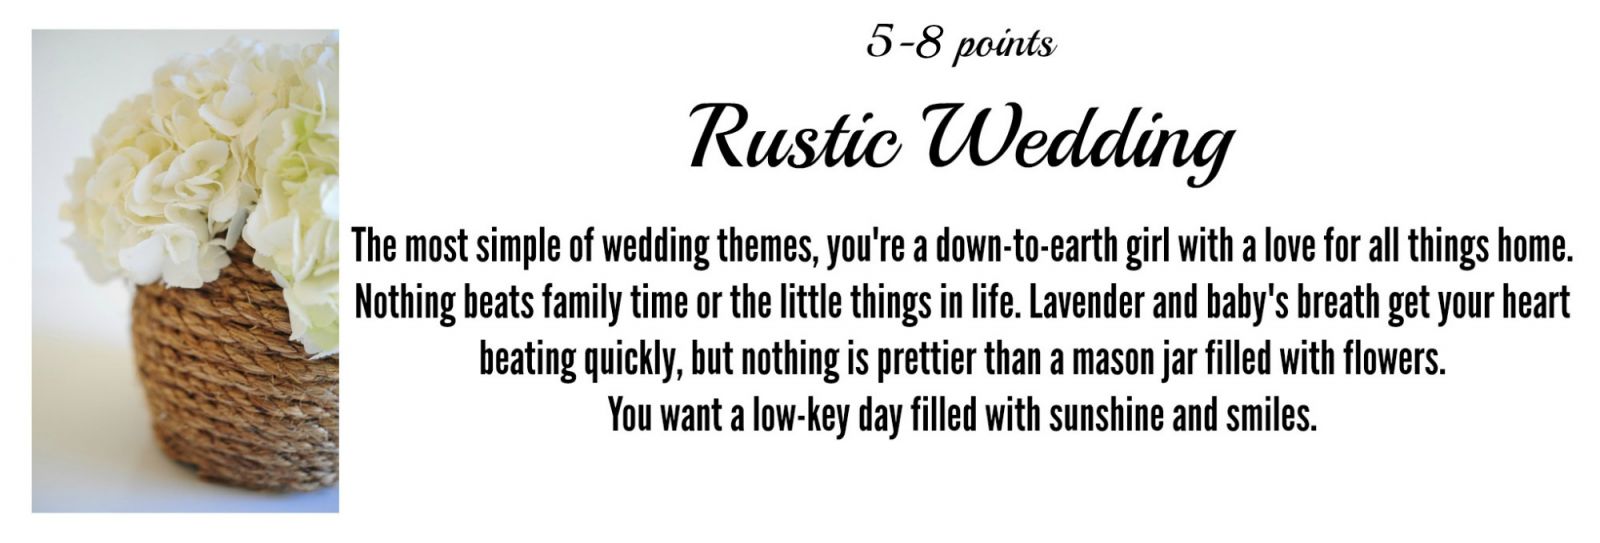 Rustic Wedding Ideas